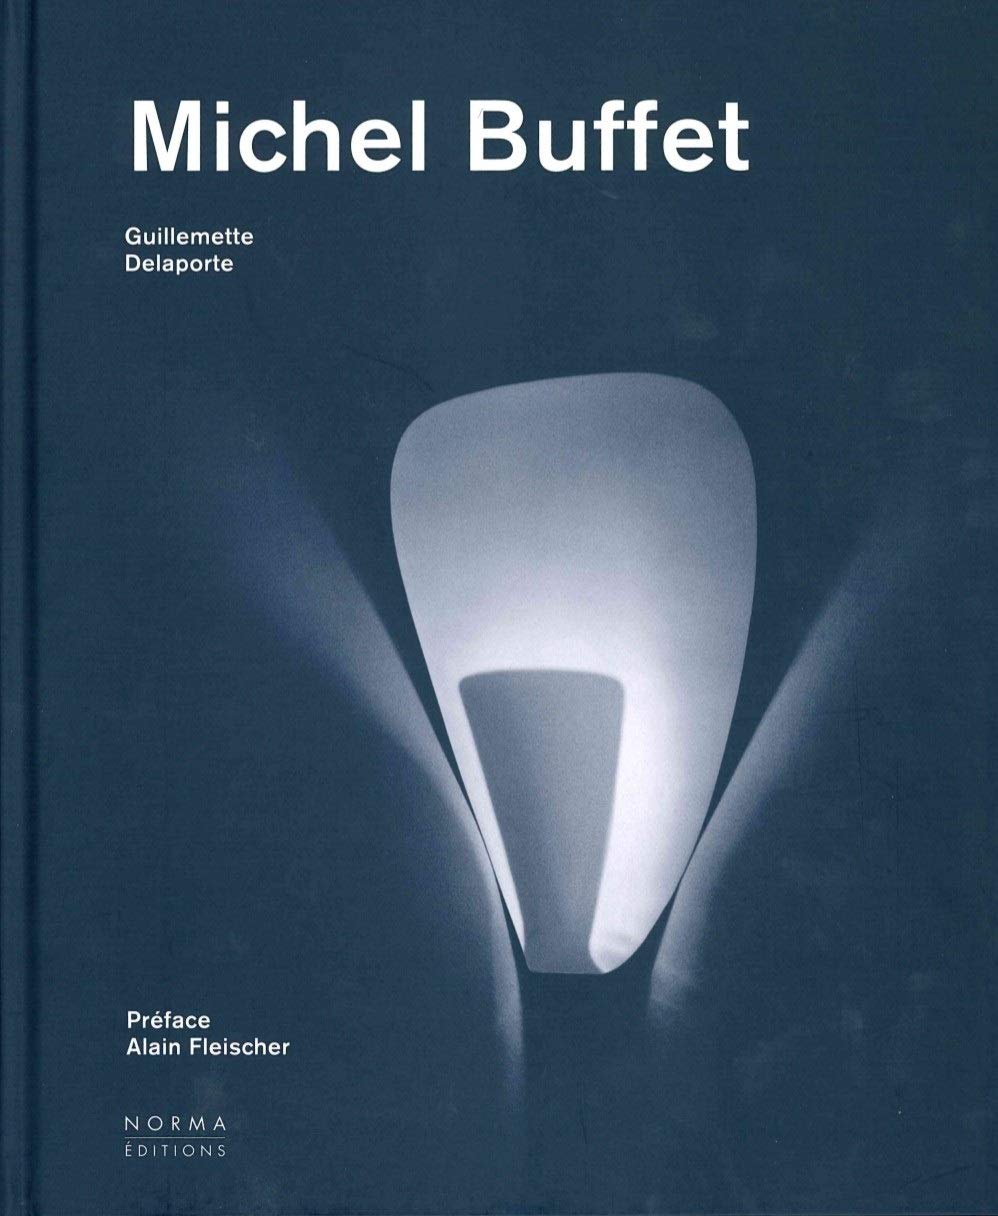 Michel Buffet